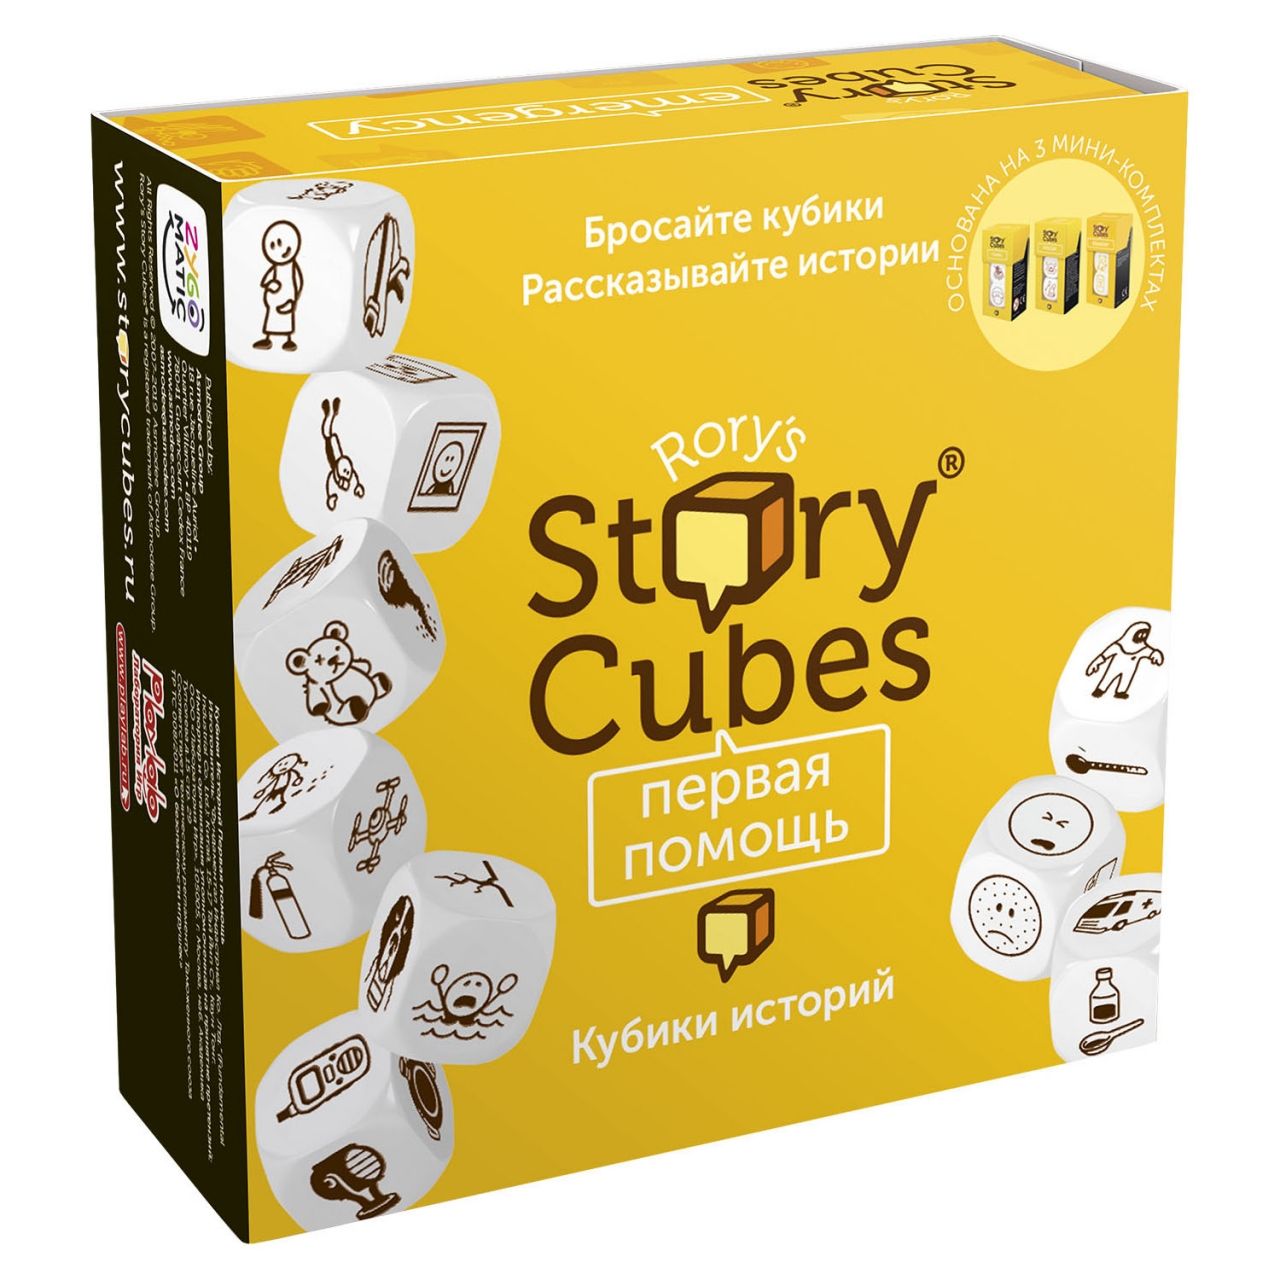 Настольная игра RORYS STORY CUBES RSC32 кубики историй Первая помощь настольная игра кубики историй действия